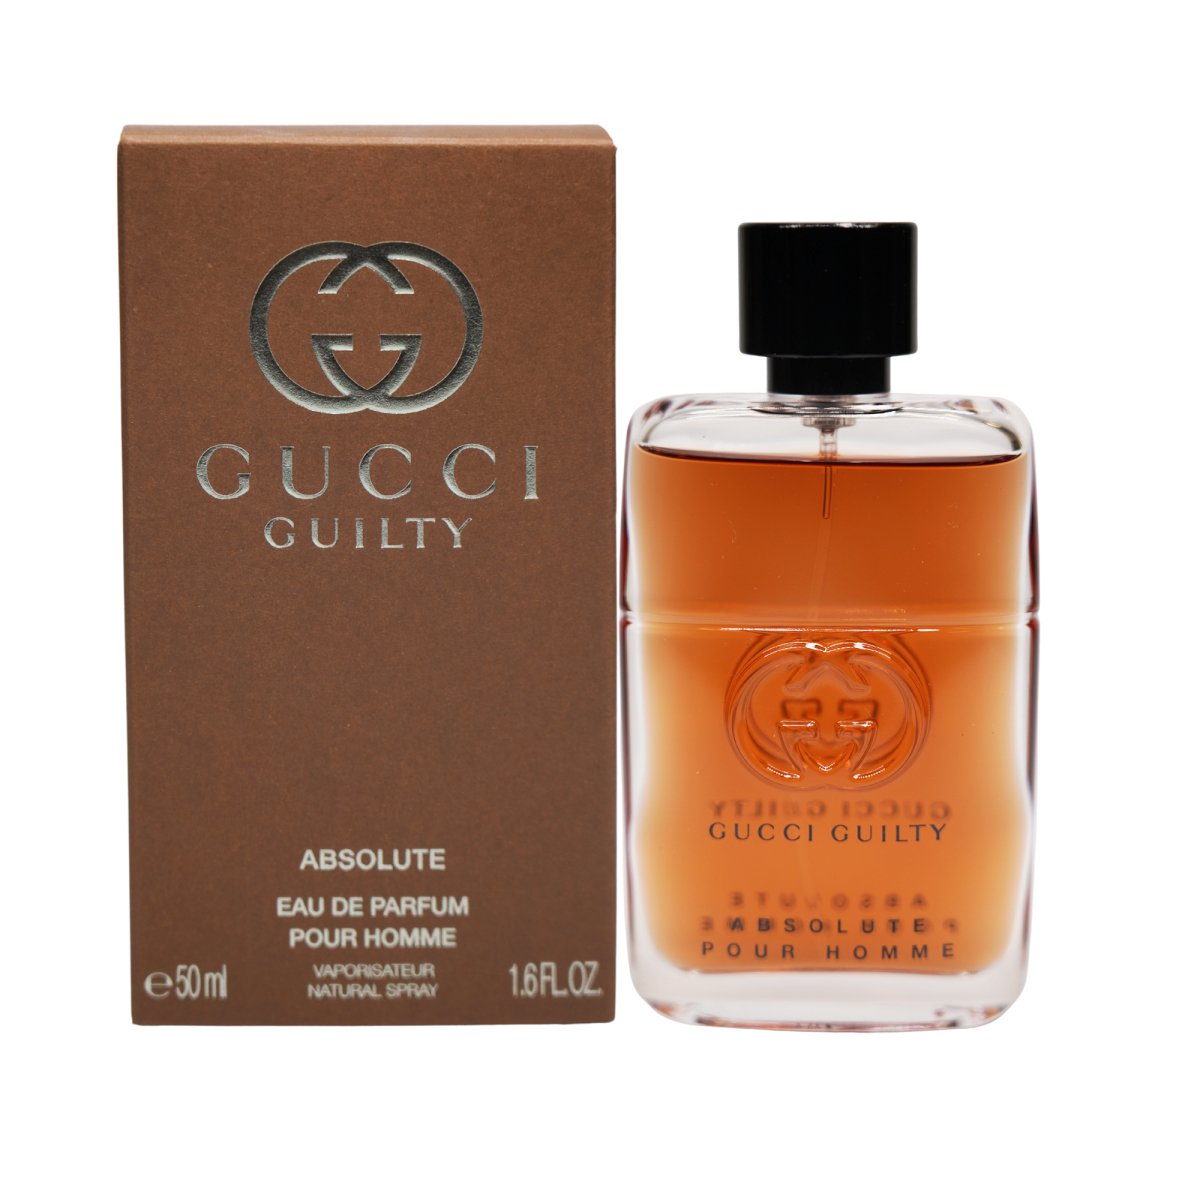 Gucci Guilty Absolute Eau de Parfum Spray for Men - Gucci - 1.6 oz - Eau de Parfum - Fragrance - 8005610344188 - Fragrance